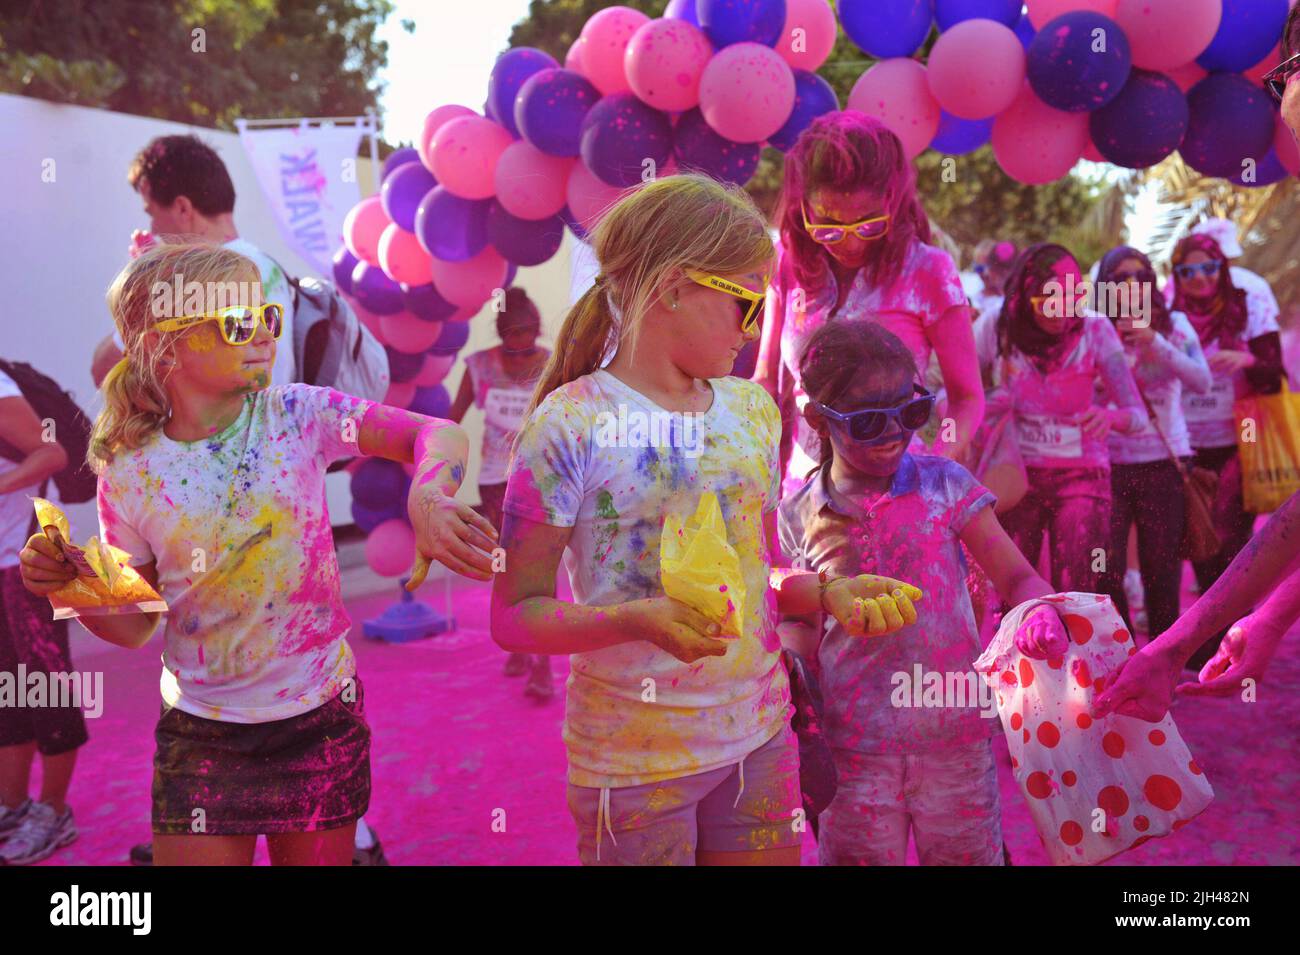 Le giovani ragazze bionde che indossano le tonalità gialle si fermano per afferrare la polvere più colorata oltre un arco di palloncino rosa al Color Walk di Dubai, Emirati Arabi Uniti. Foto Stock